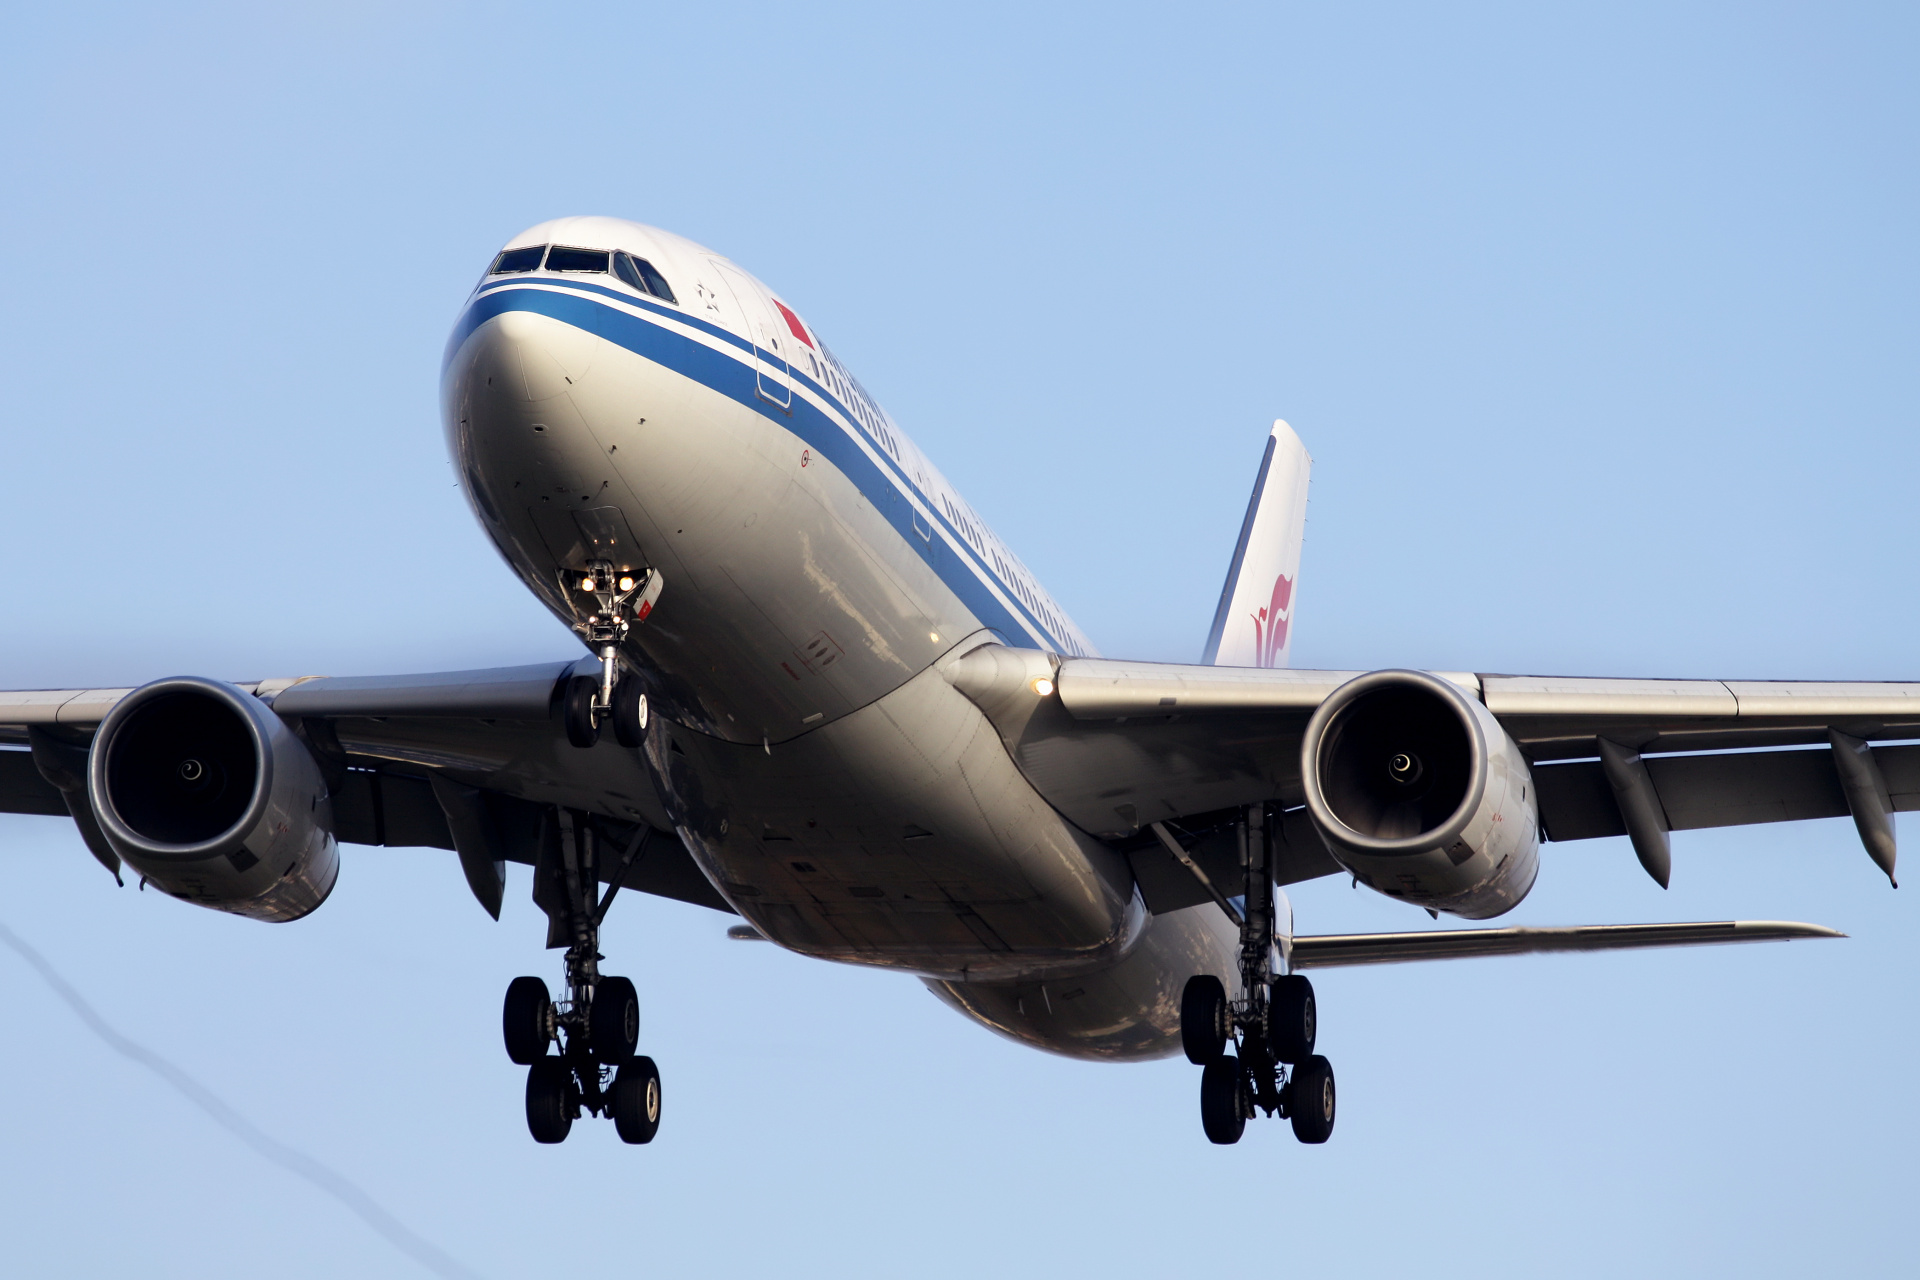 B-6113 (Aircraft » EPWA Spotting » Airbus A330-200 » Air China)